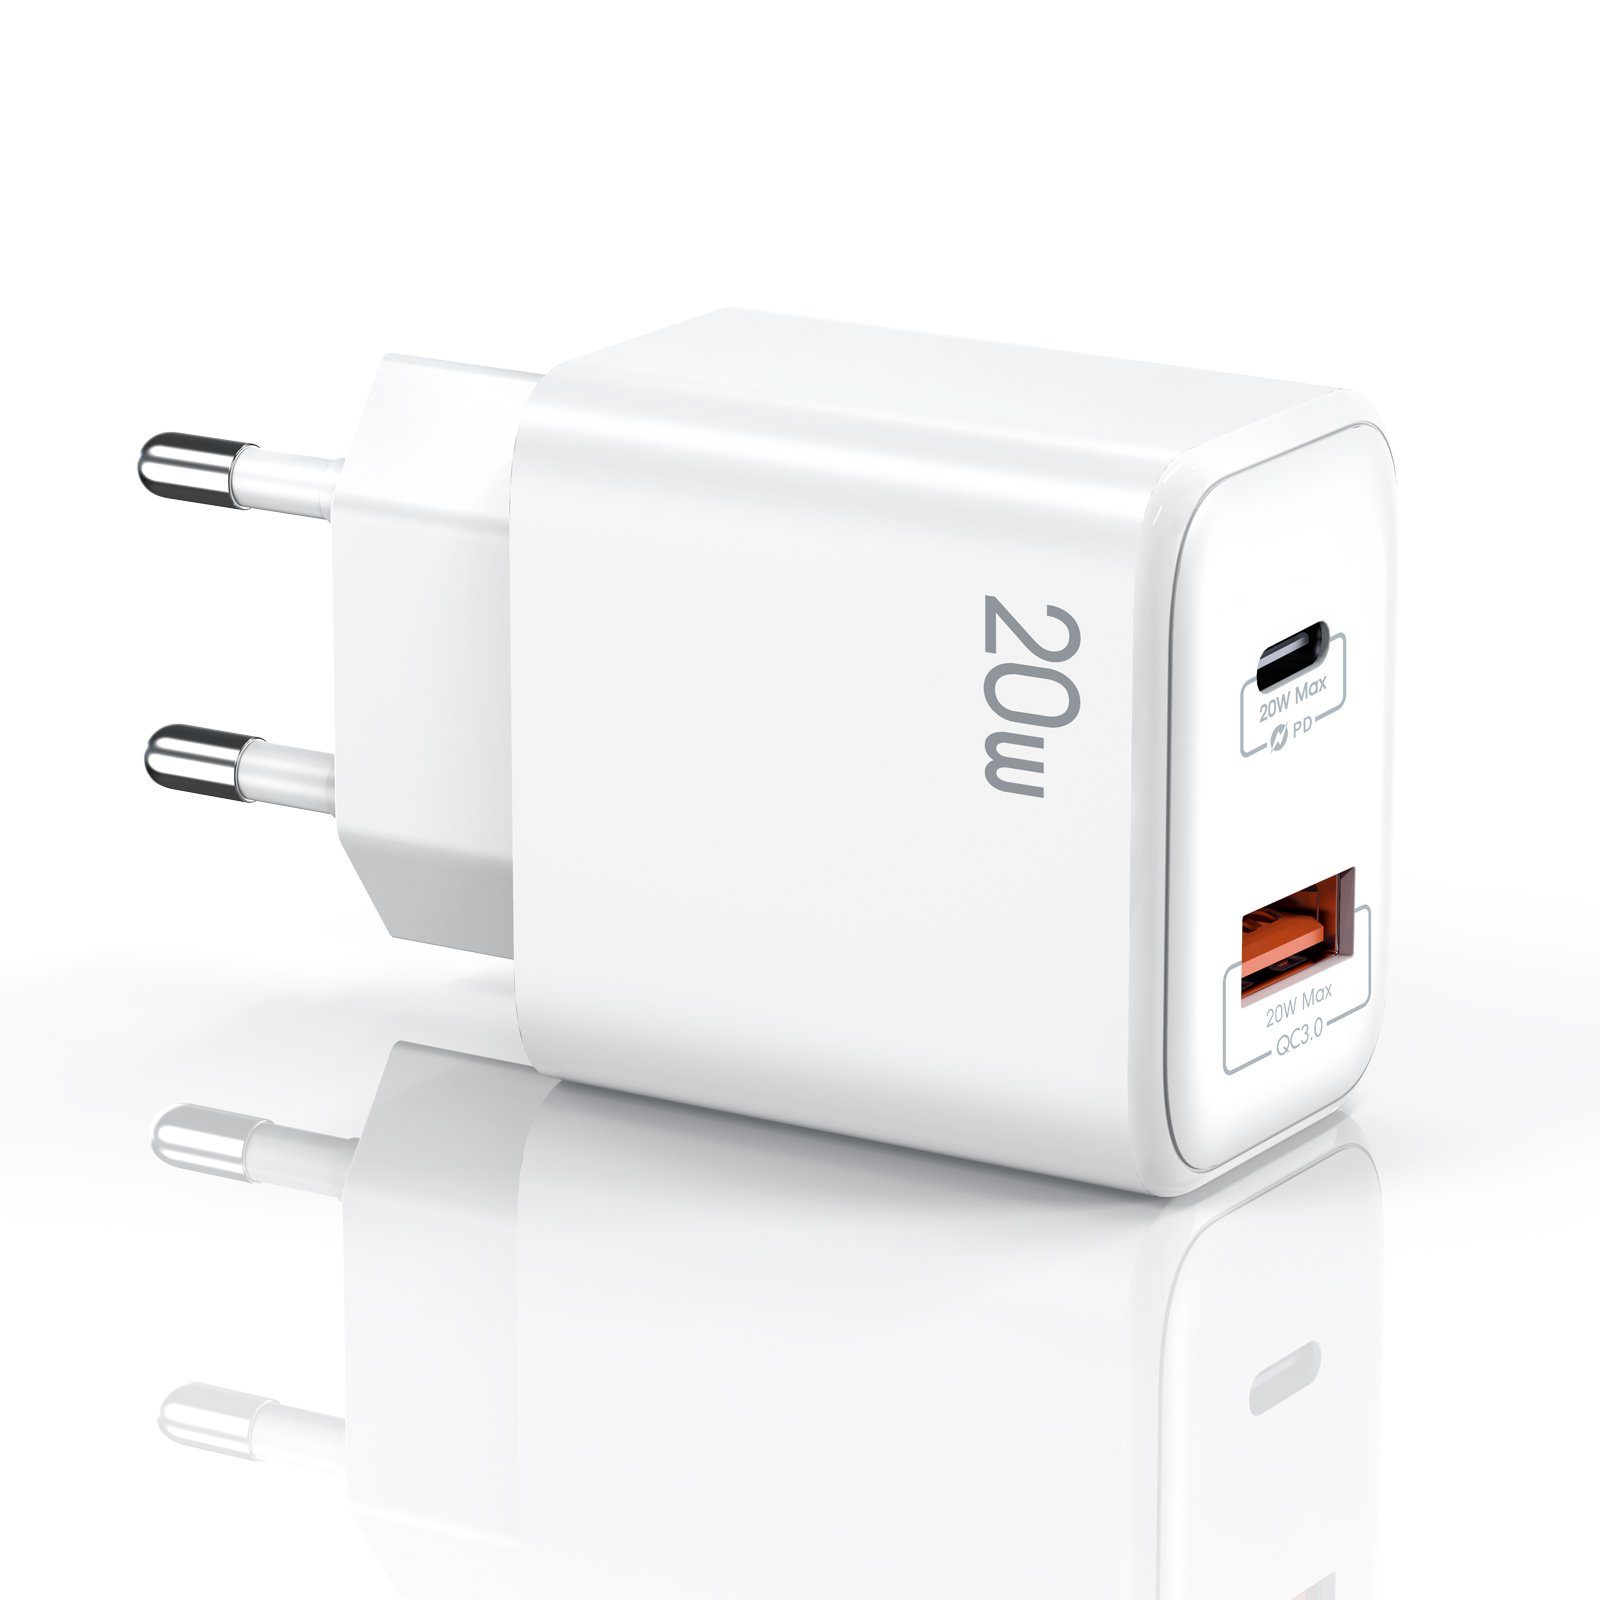 neue dawn 20W USB C Ladegerät für iPhone 12 Pro Max Netzteil  Schnellladegerät USB-Ladegerät (1, 1, Schnellladegerät)